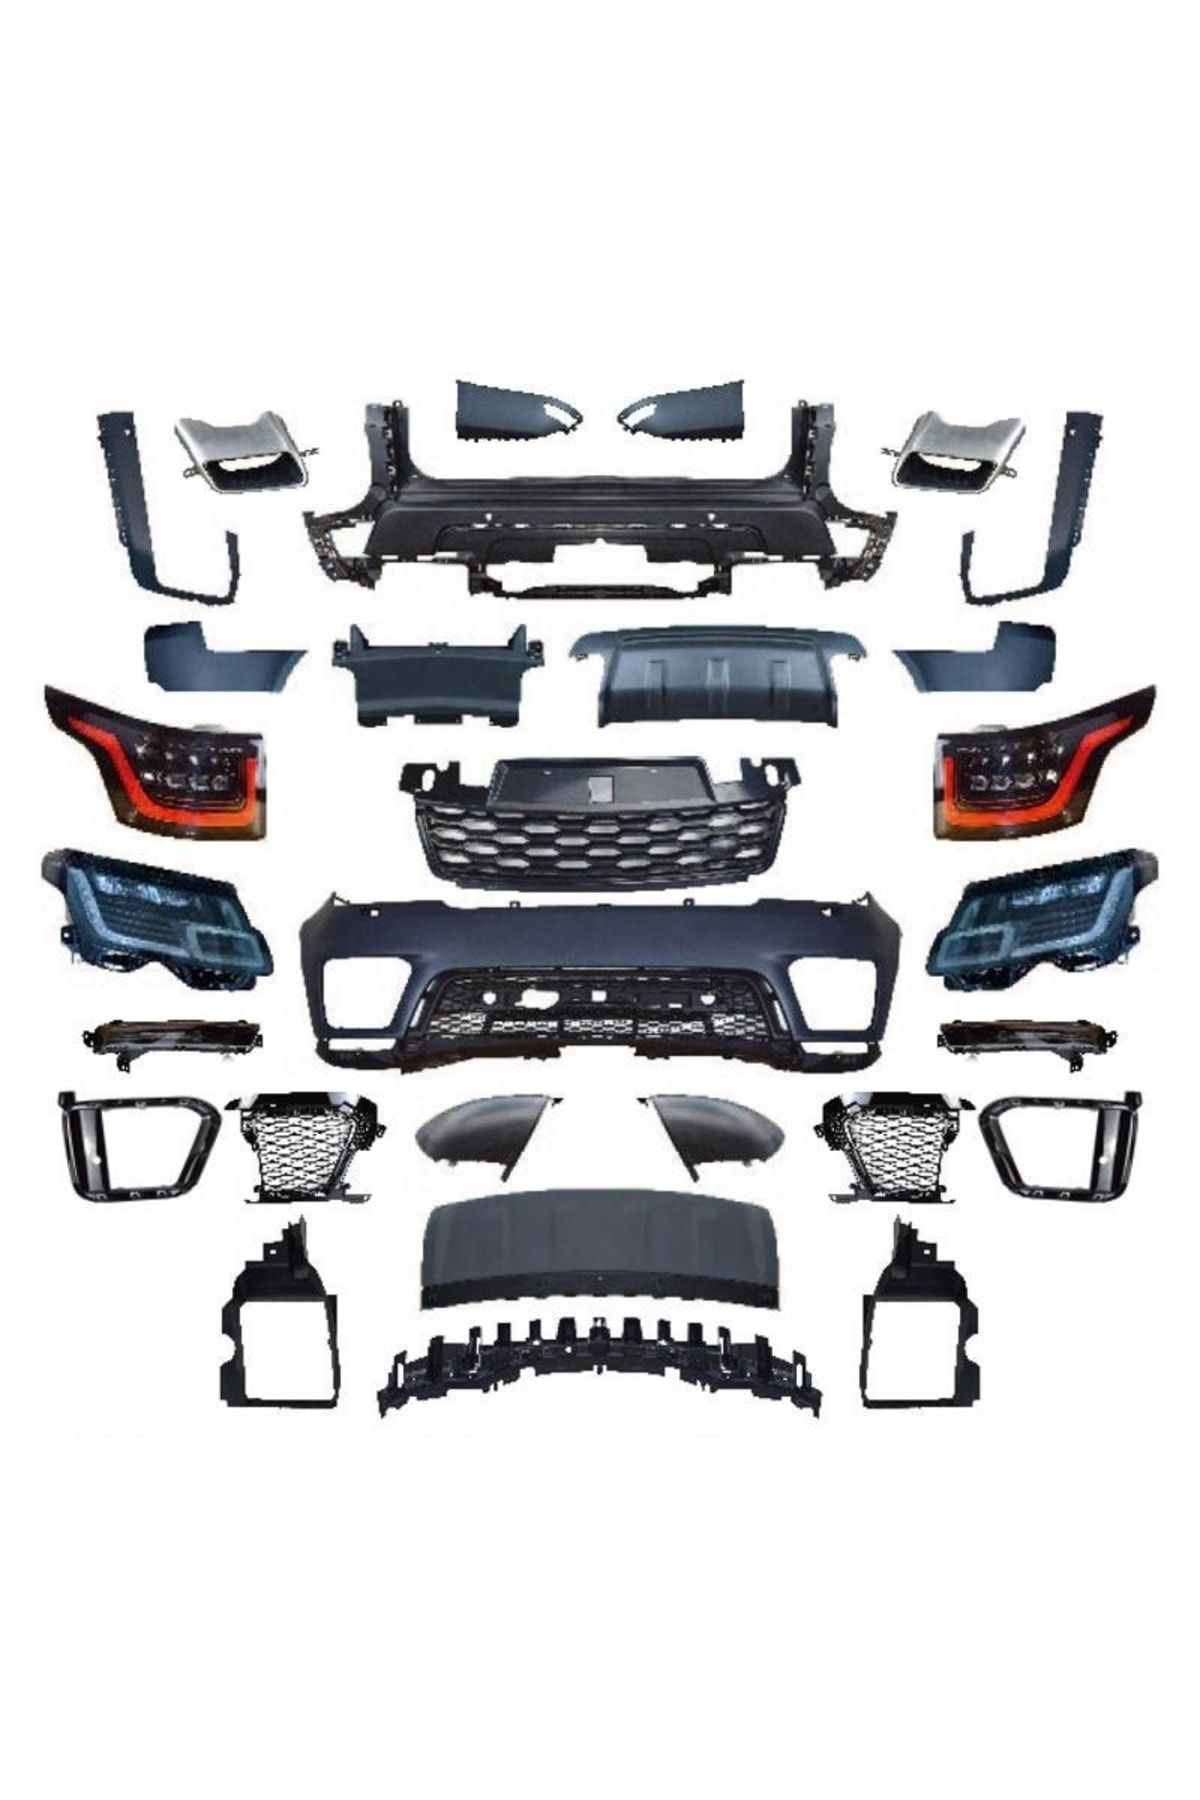 OLED GARAJ Range Rover Sport İçin Uyumlu 2014-2017 Facelift 2018+ Bodykit